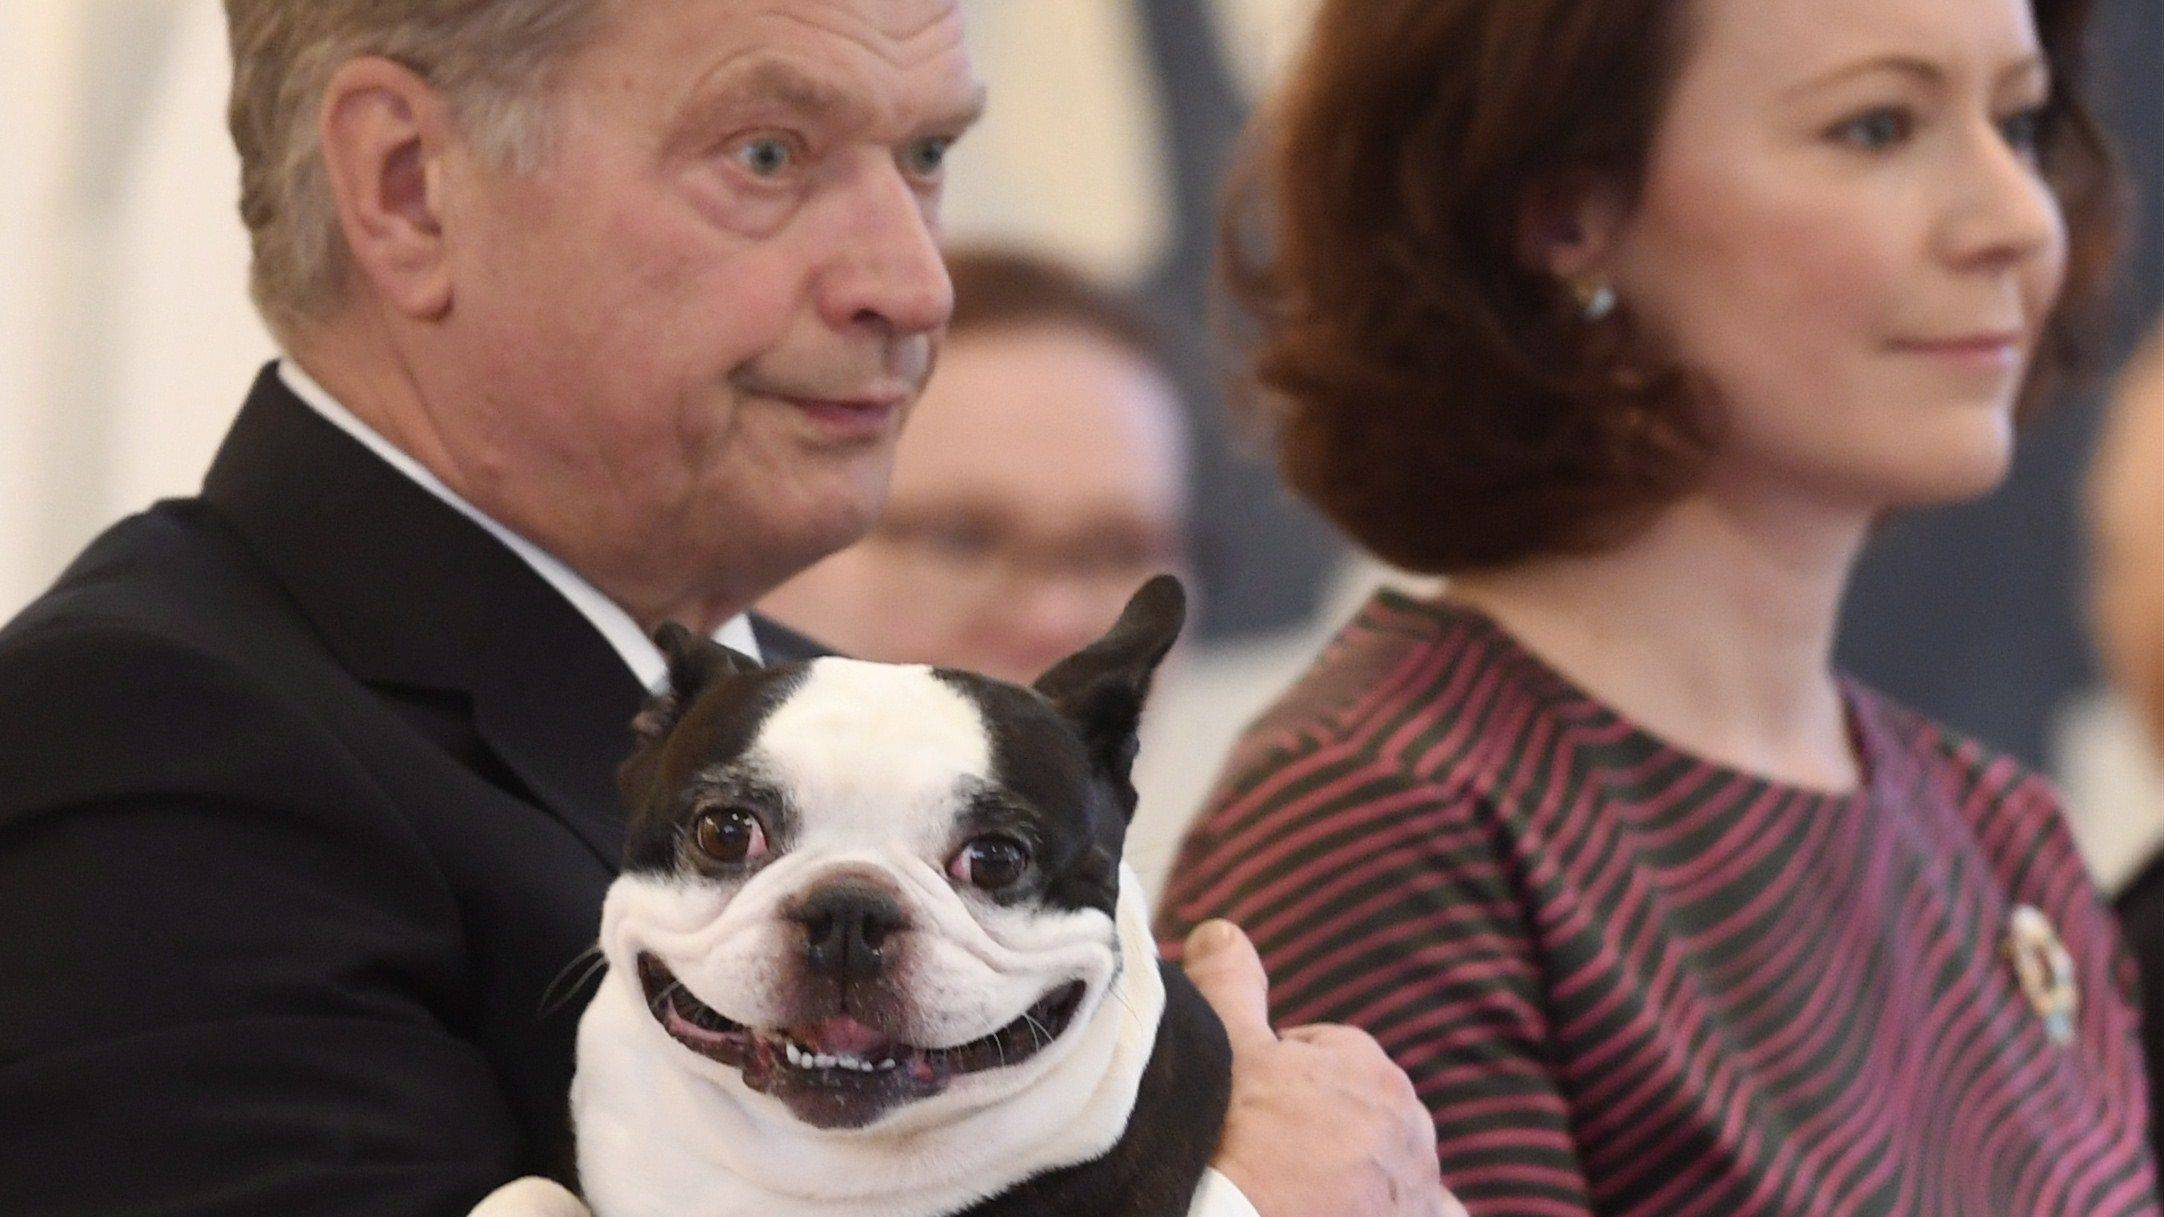 เมื่อประธานาธิบดีฟินแลนด์พาหมาไปออกงานด้วย ทำยิ้มแฉ่งแย่งซีน แชร์กันว่อนโซเฃียล!!